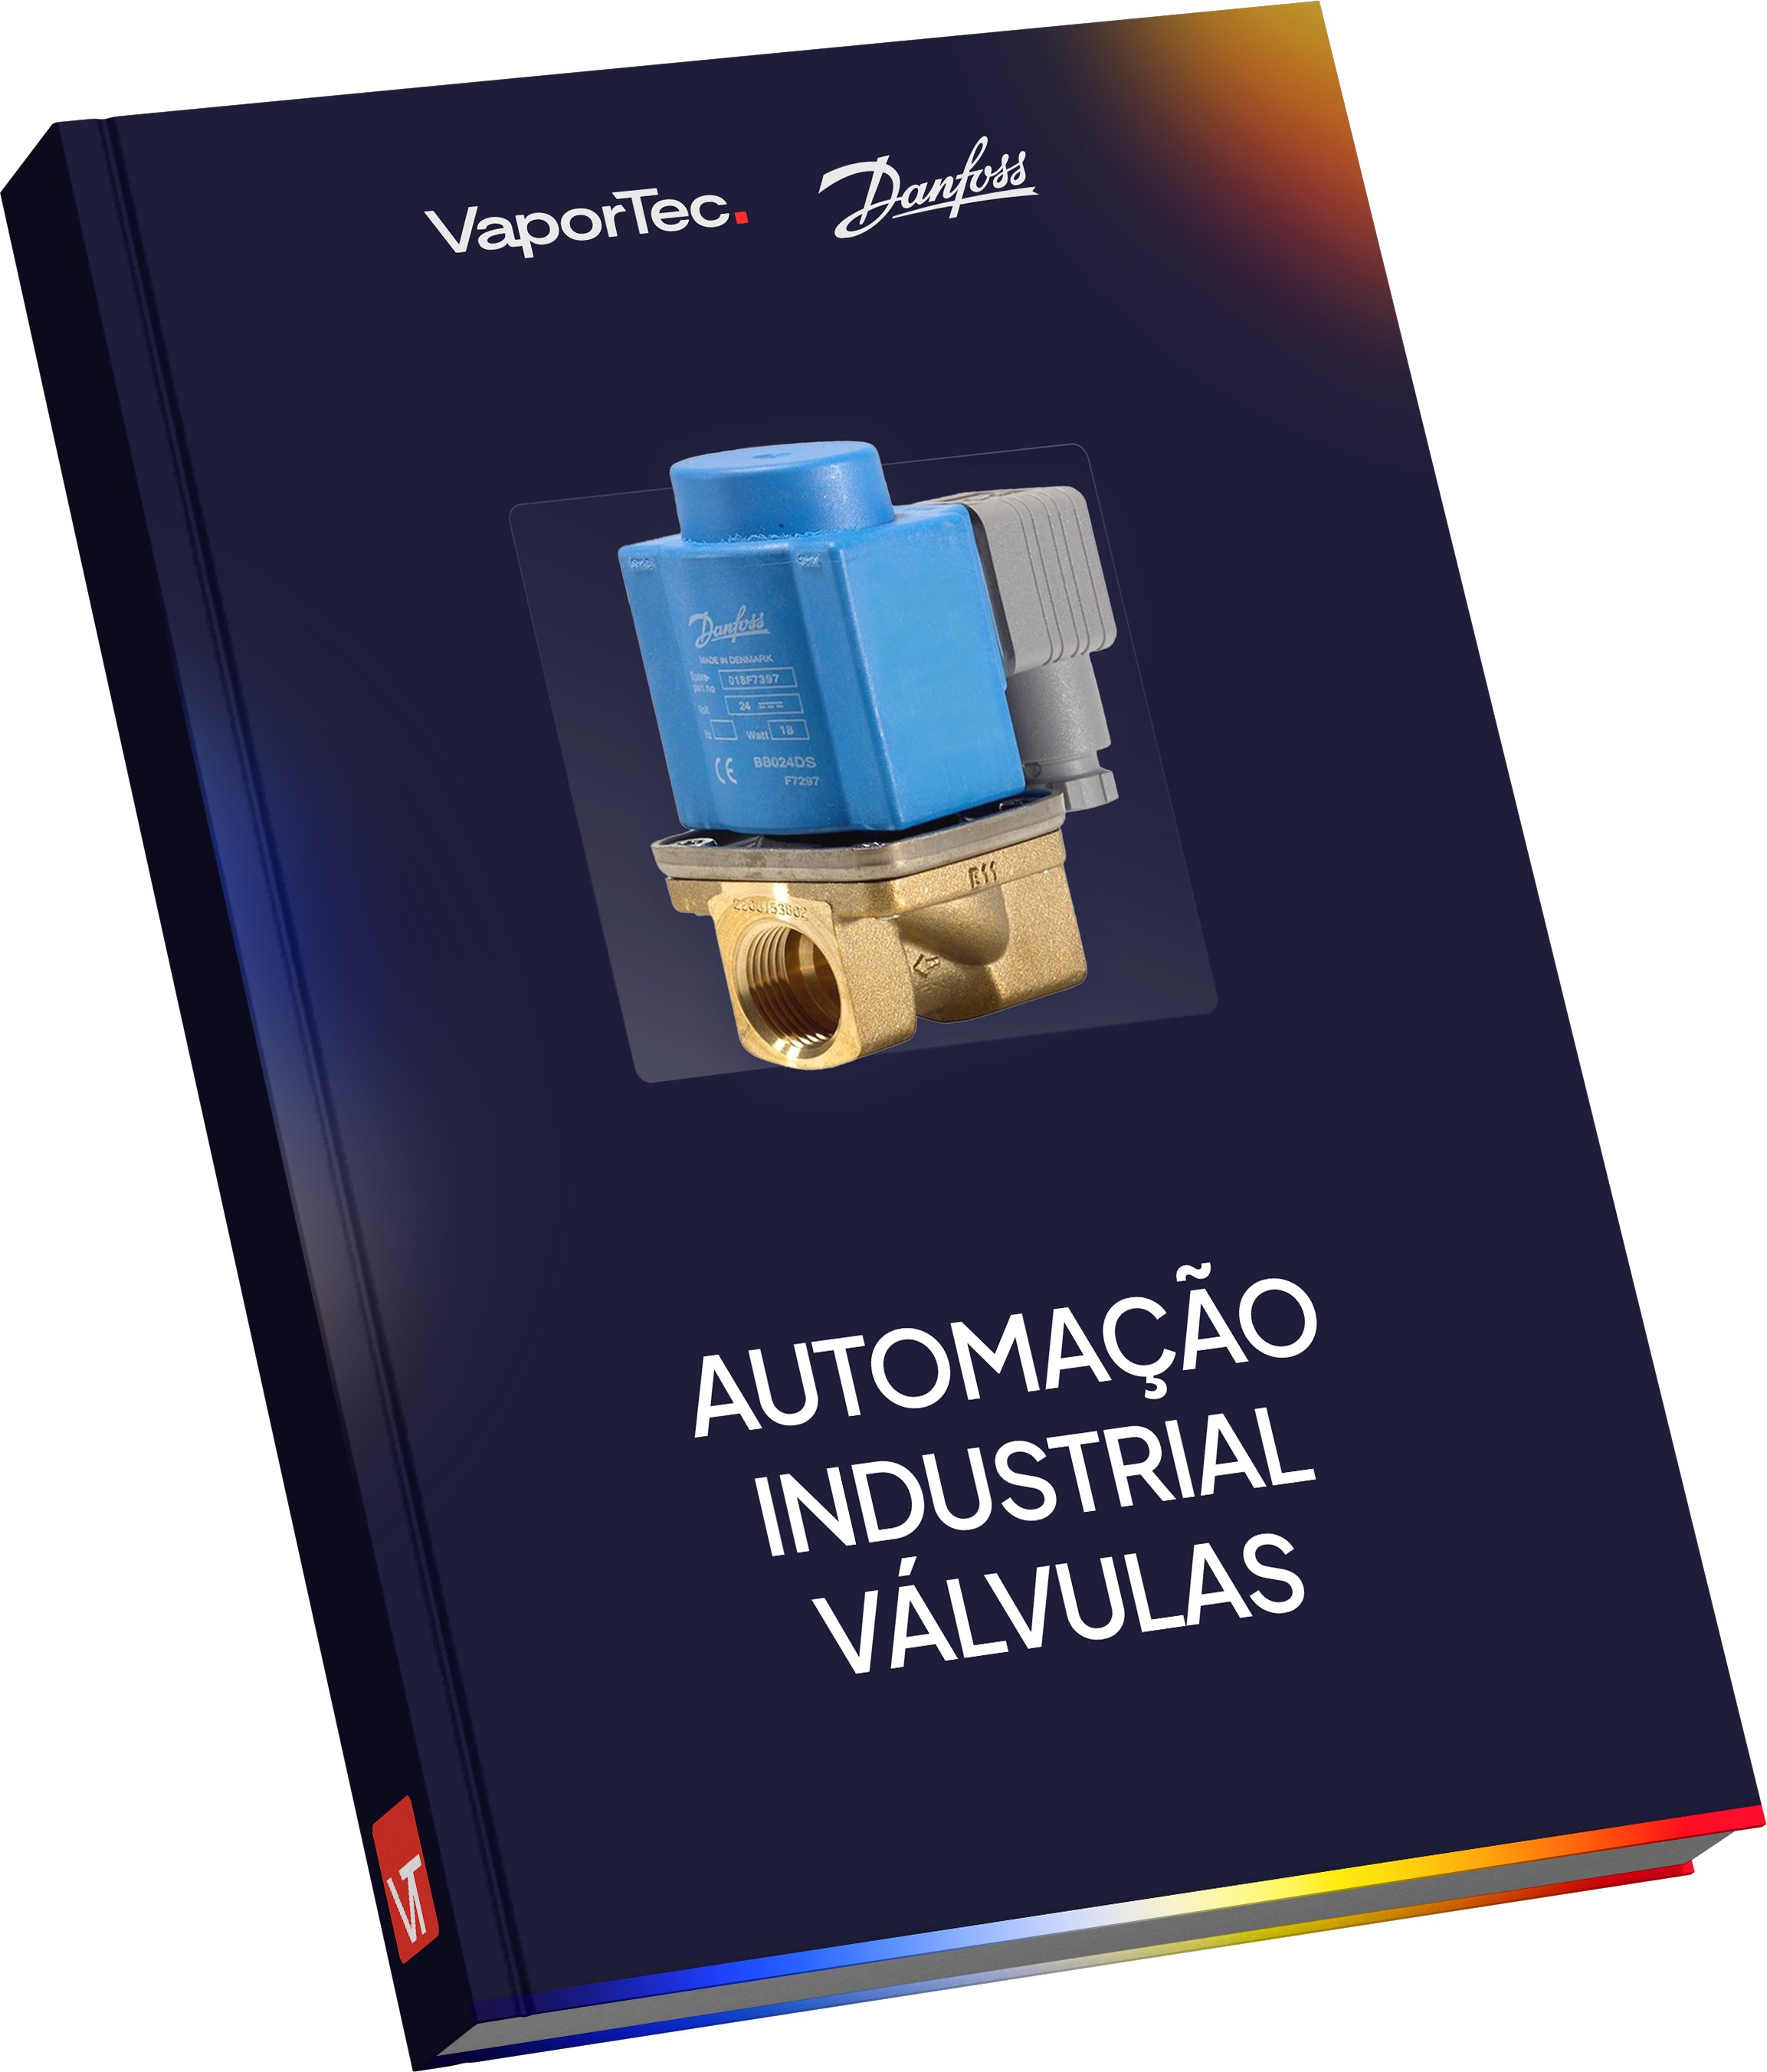 Automação industrial: válvulas